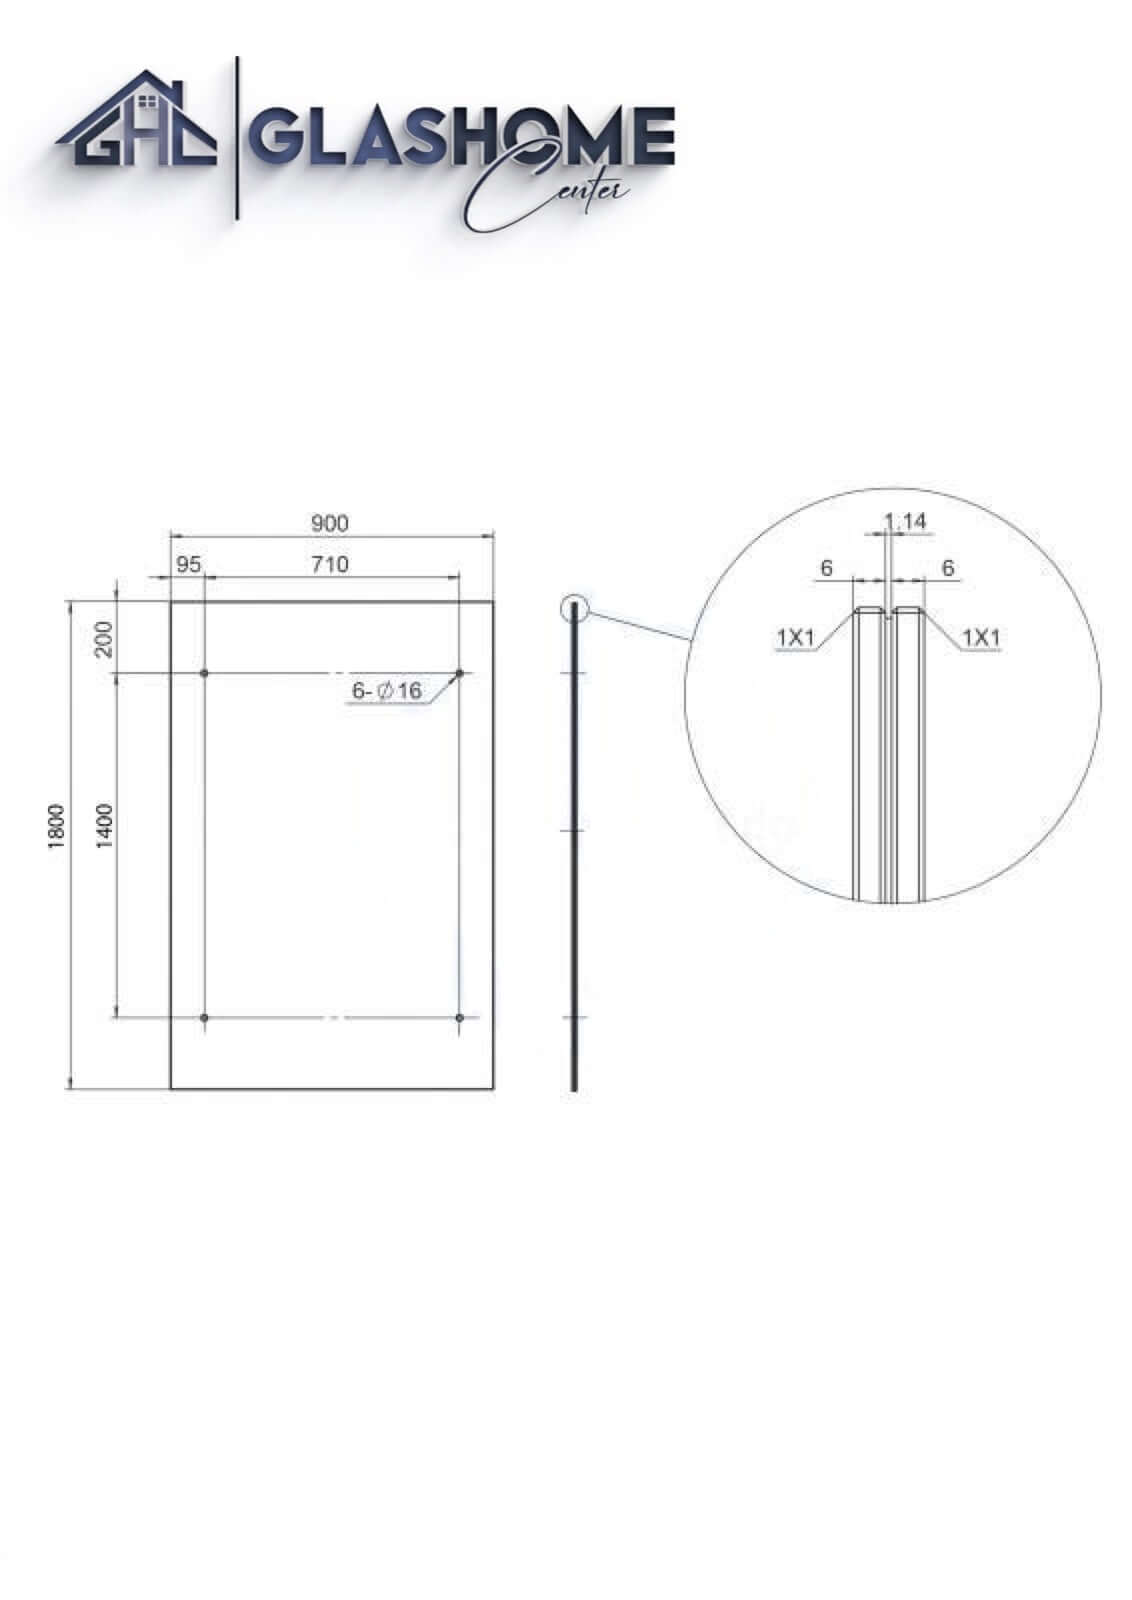 GlasHomeCenter - Glasvordach - Milchglas - 180x90cm - 13.1mm VSG - inkl. 2 schwarze Edelstahlhalterungen Variante "Rom"